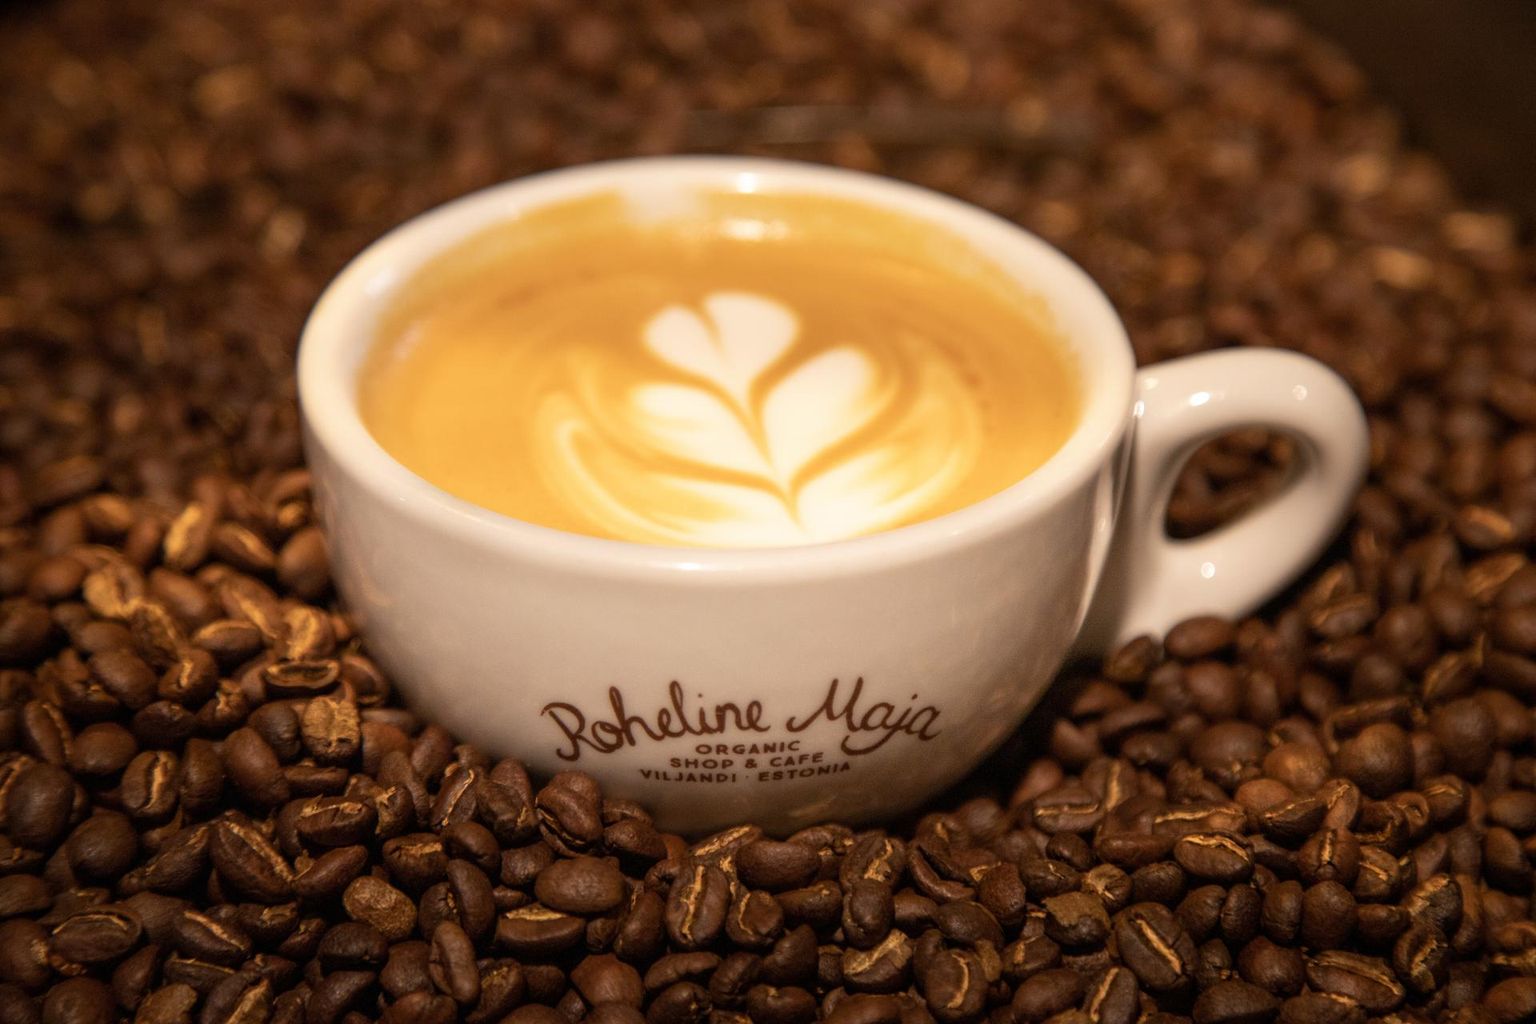 Kvaliteetse cappuccino juurde käib kohviga samaväärne piim.